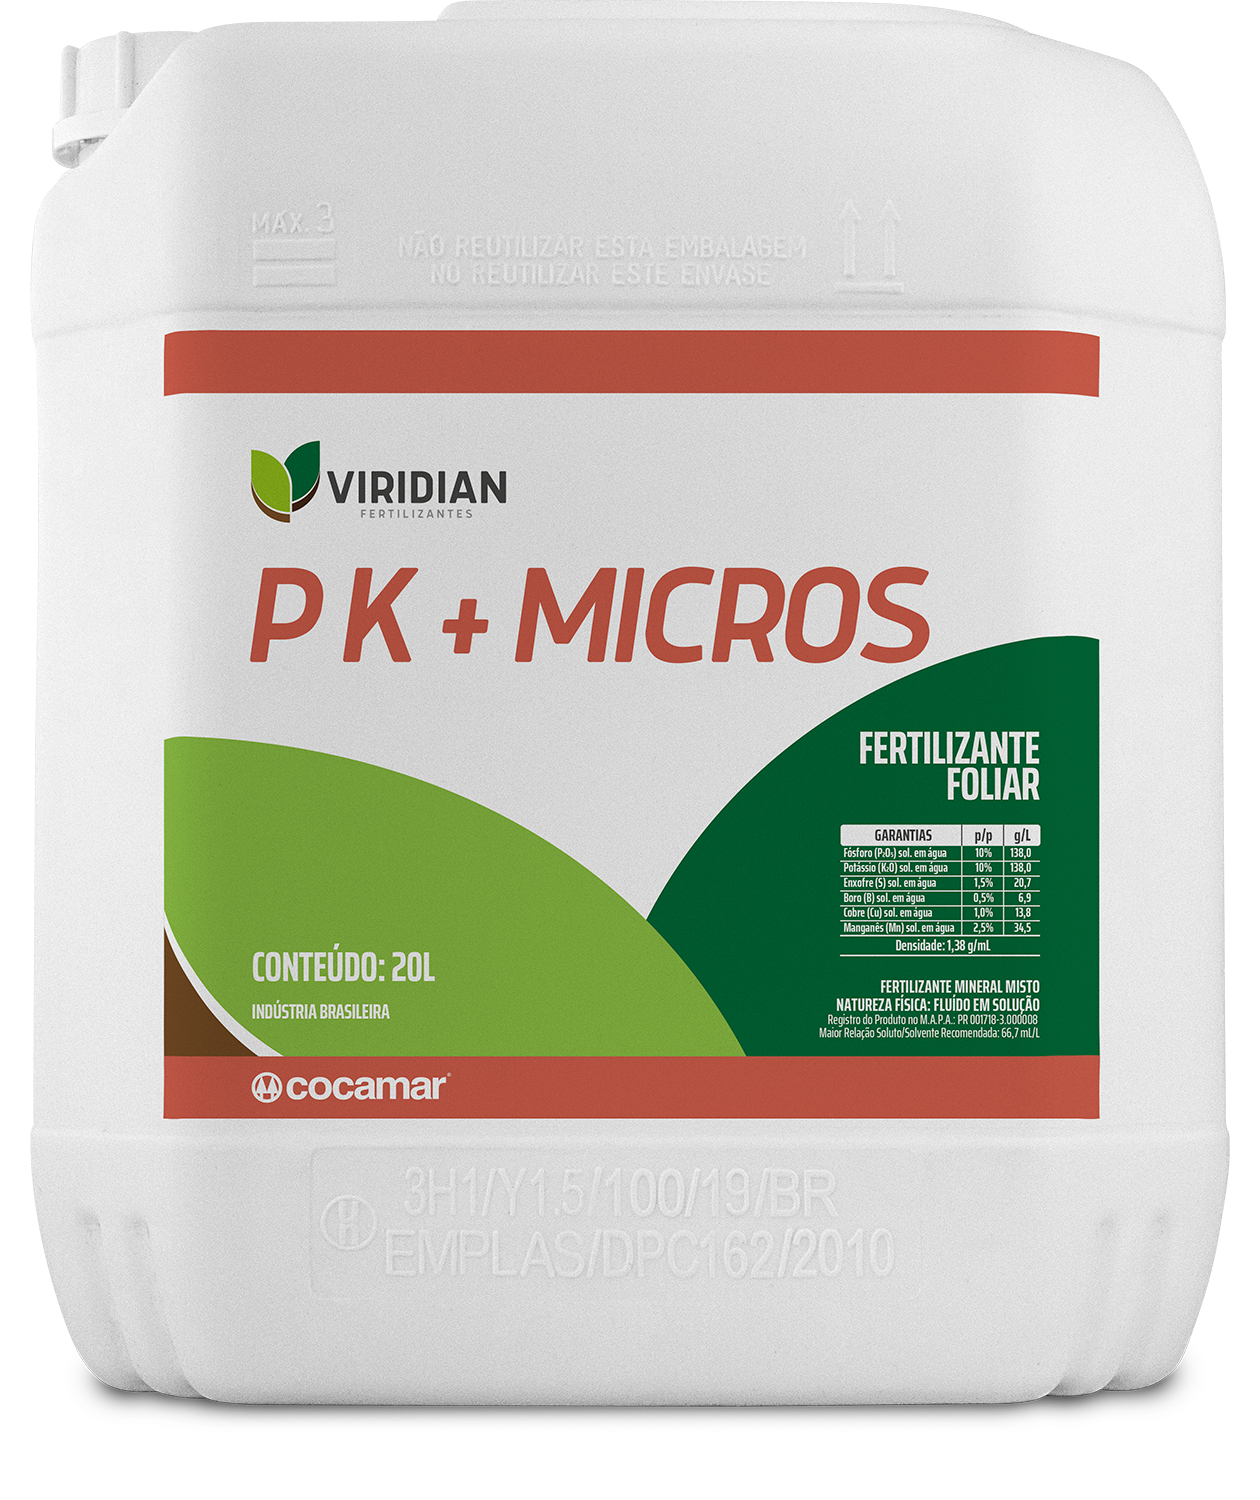 Embalagem Viridian PK + Micros